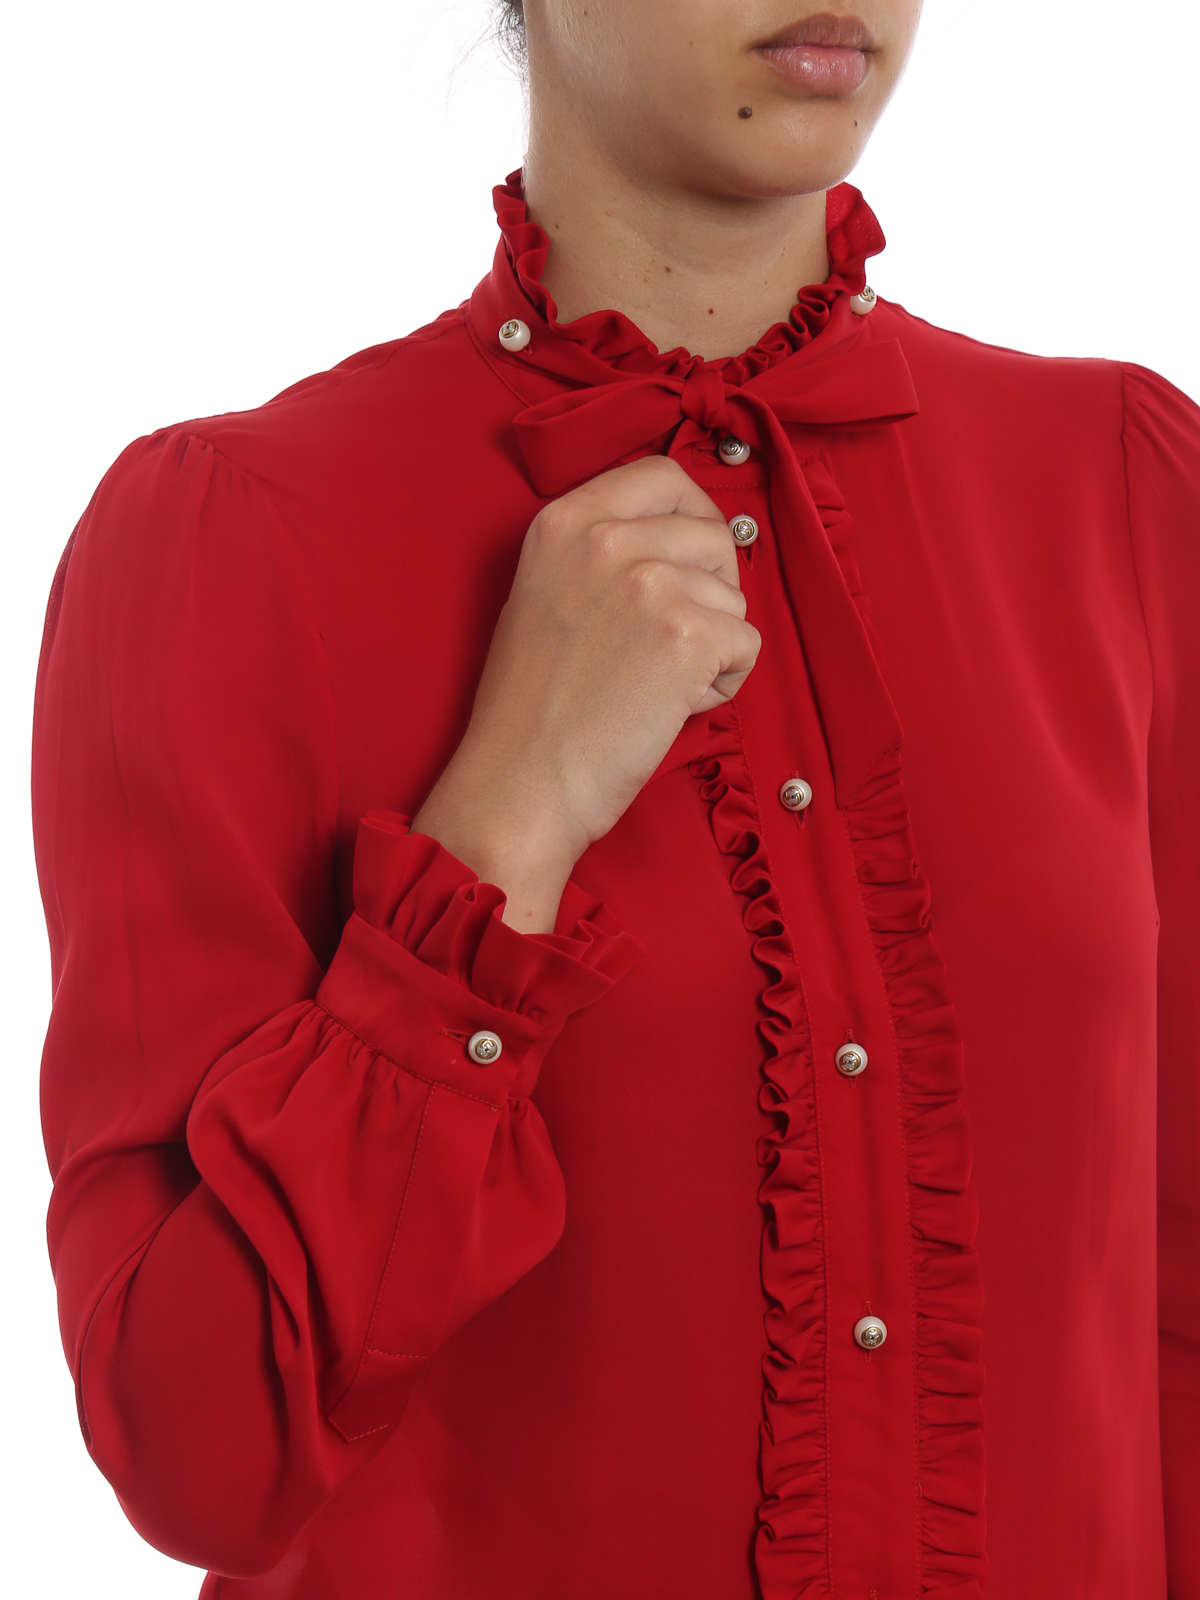 Habubu ampliar ecuación Camisas Gucci - Camisa - Rojo - 524021ZHS186544 | iKRIX tienda online